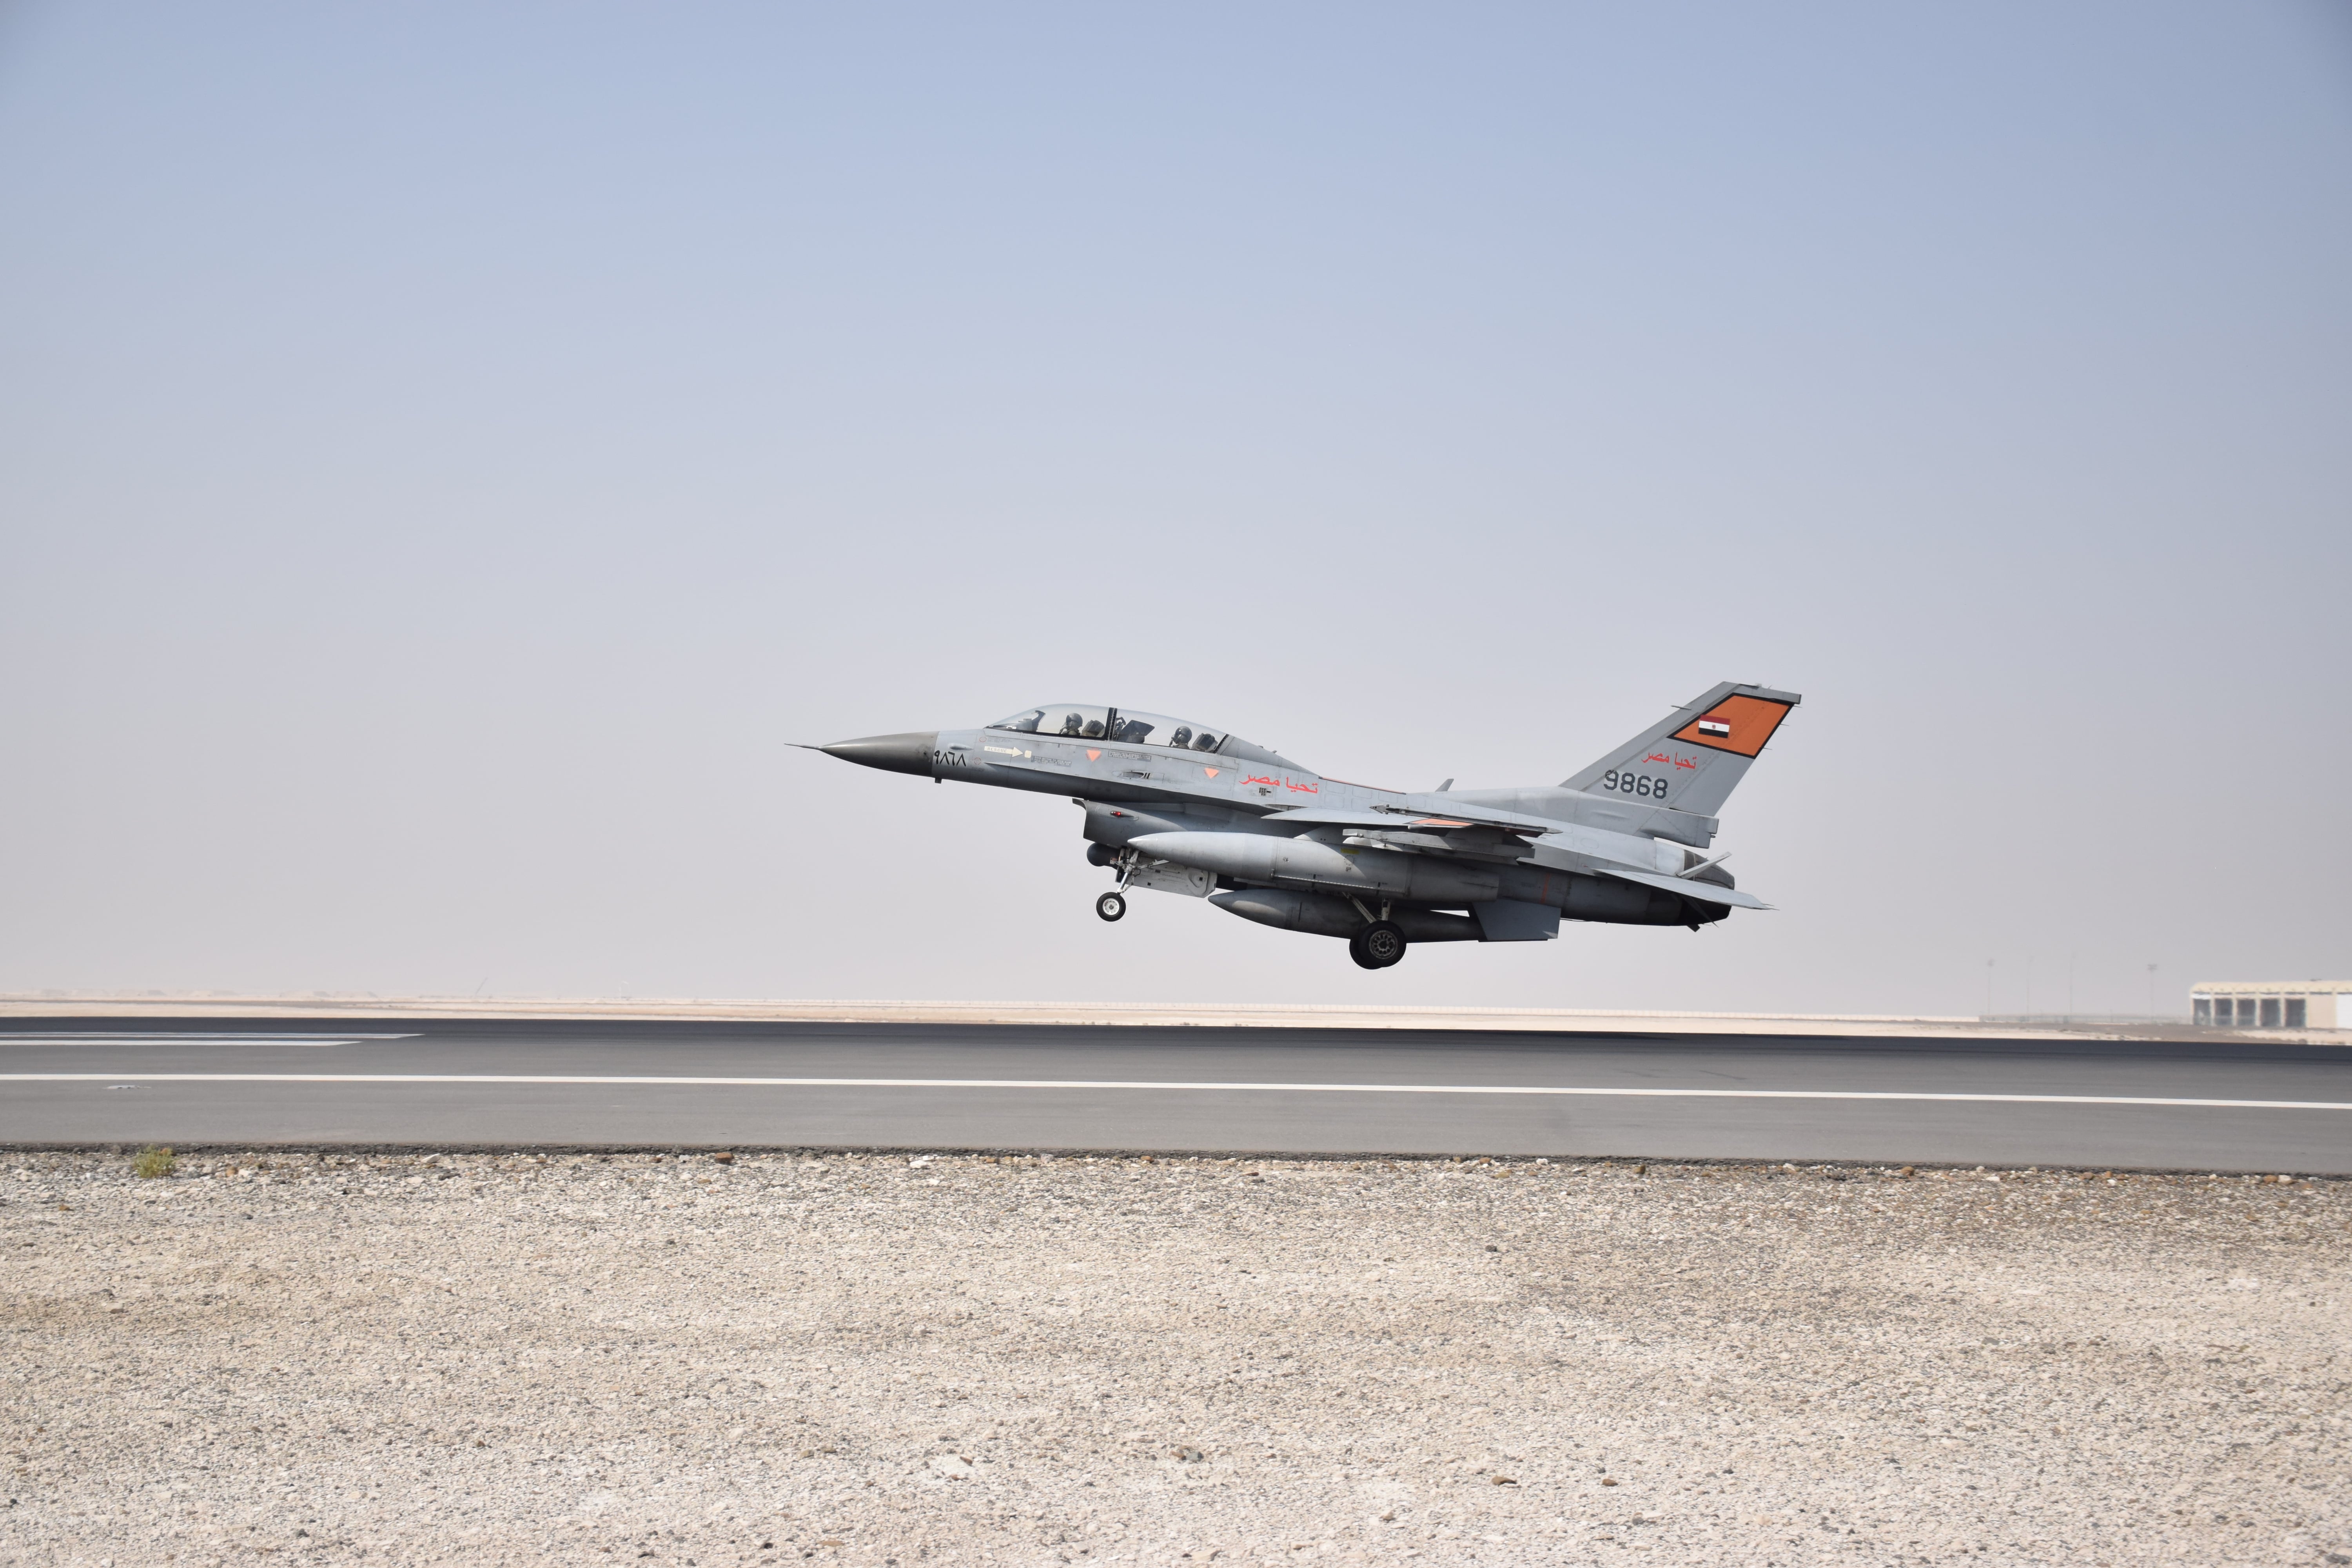 القوات الجوية المصرية واليونانية تنفذان تدريباً جوياً بإحدى القواعد اليونانية (4)